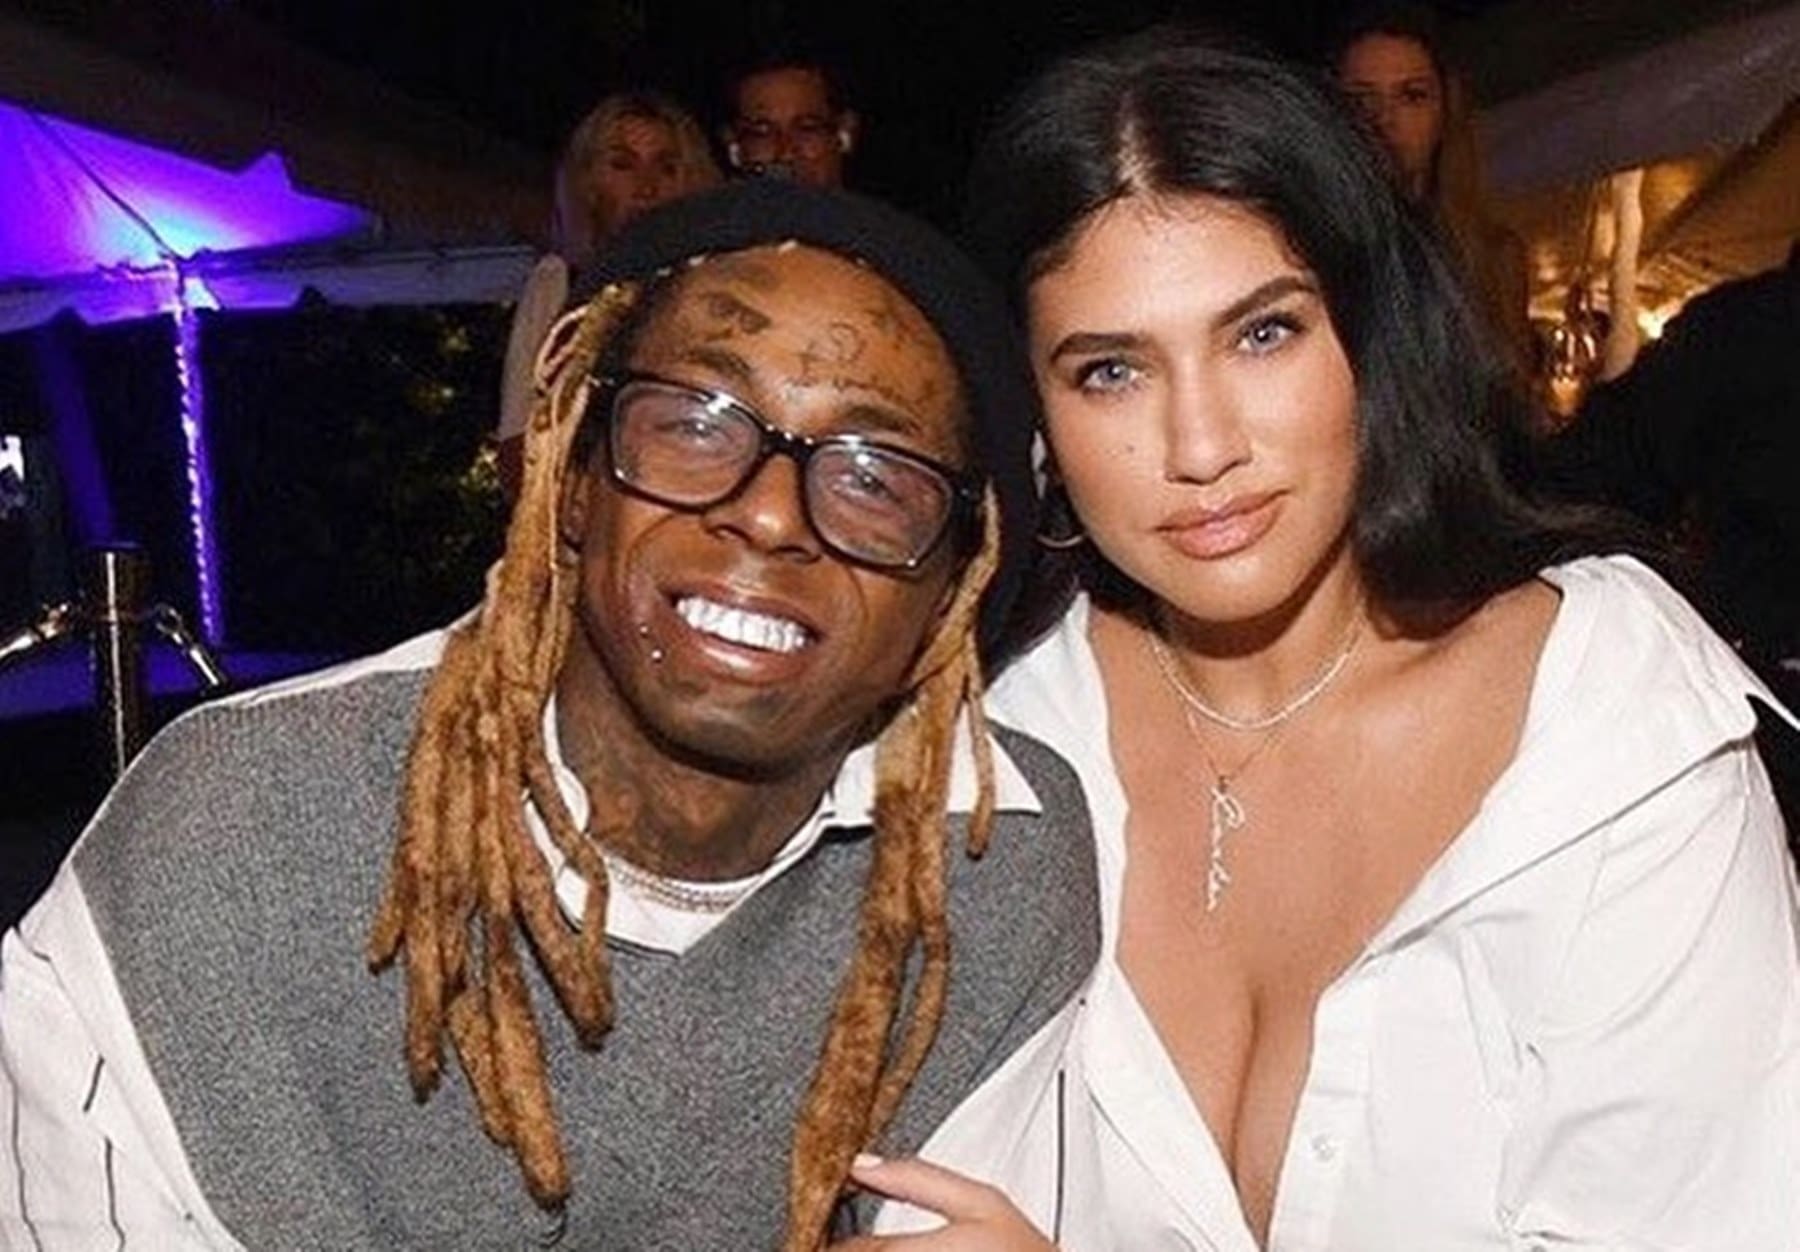 Lil Wayne Hits Miami With Curvy Fiancée La’Tecia, Nicki Minaj, And Birdman ...